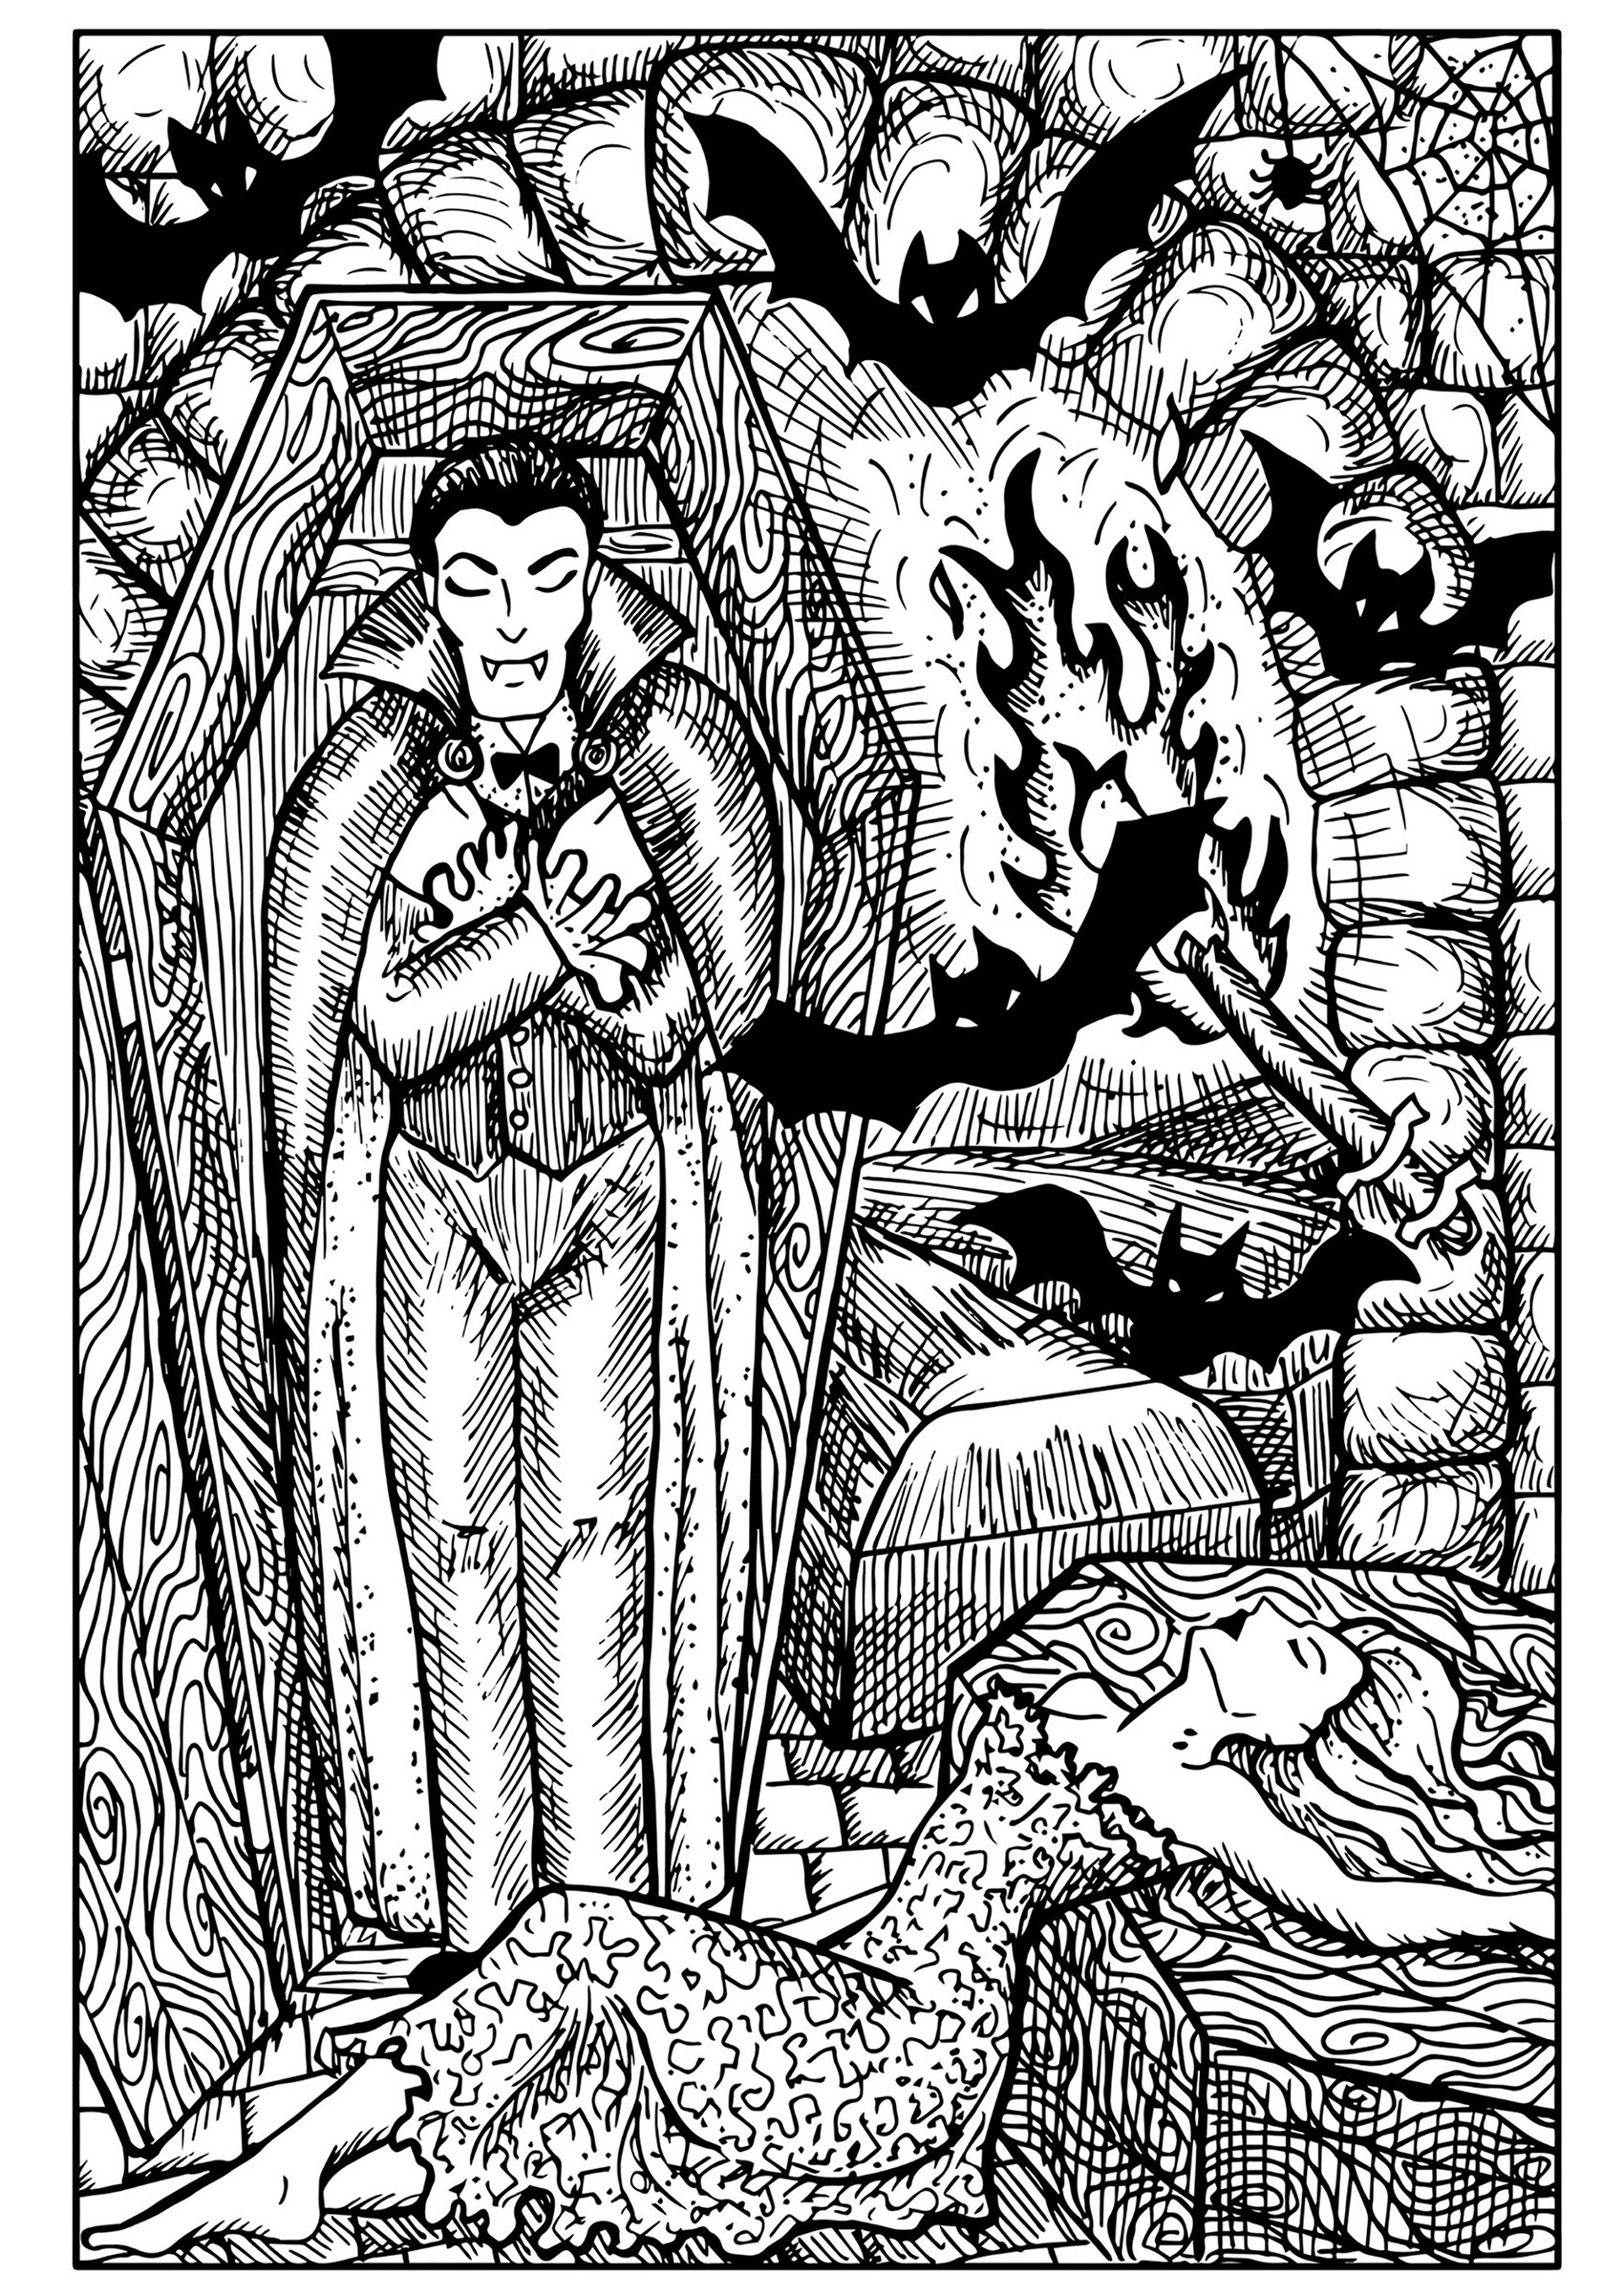 Vampire dans un cercueil, chauves-souris et femme mordue, Artiste : Samiramay   Source : 123rf